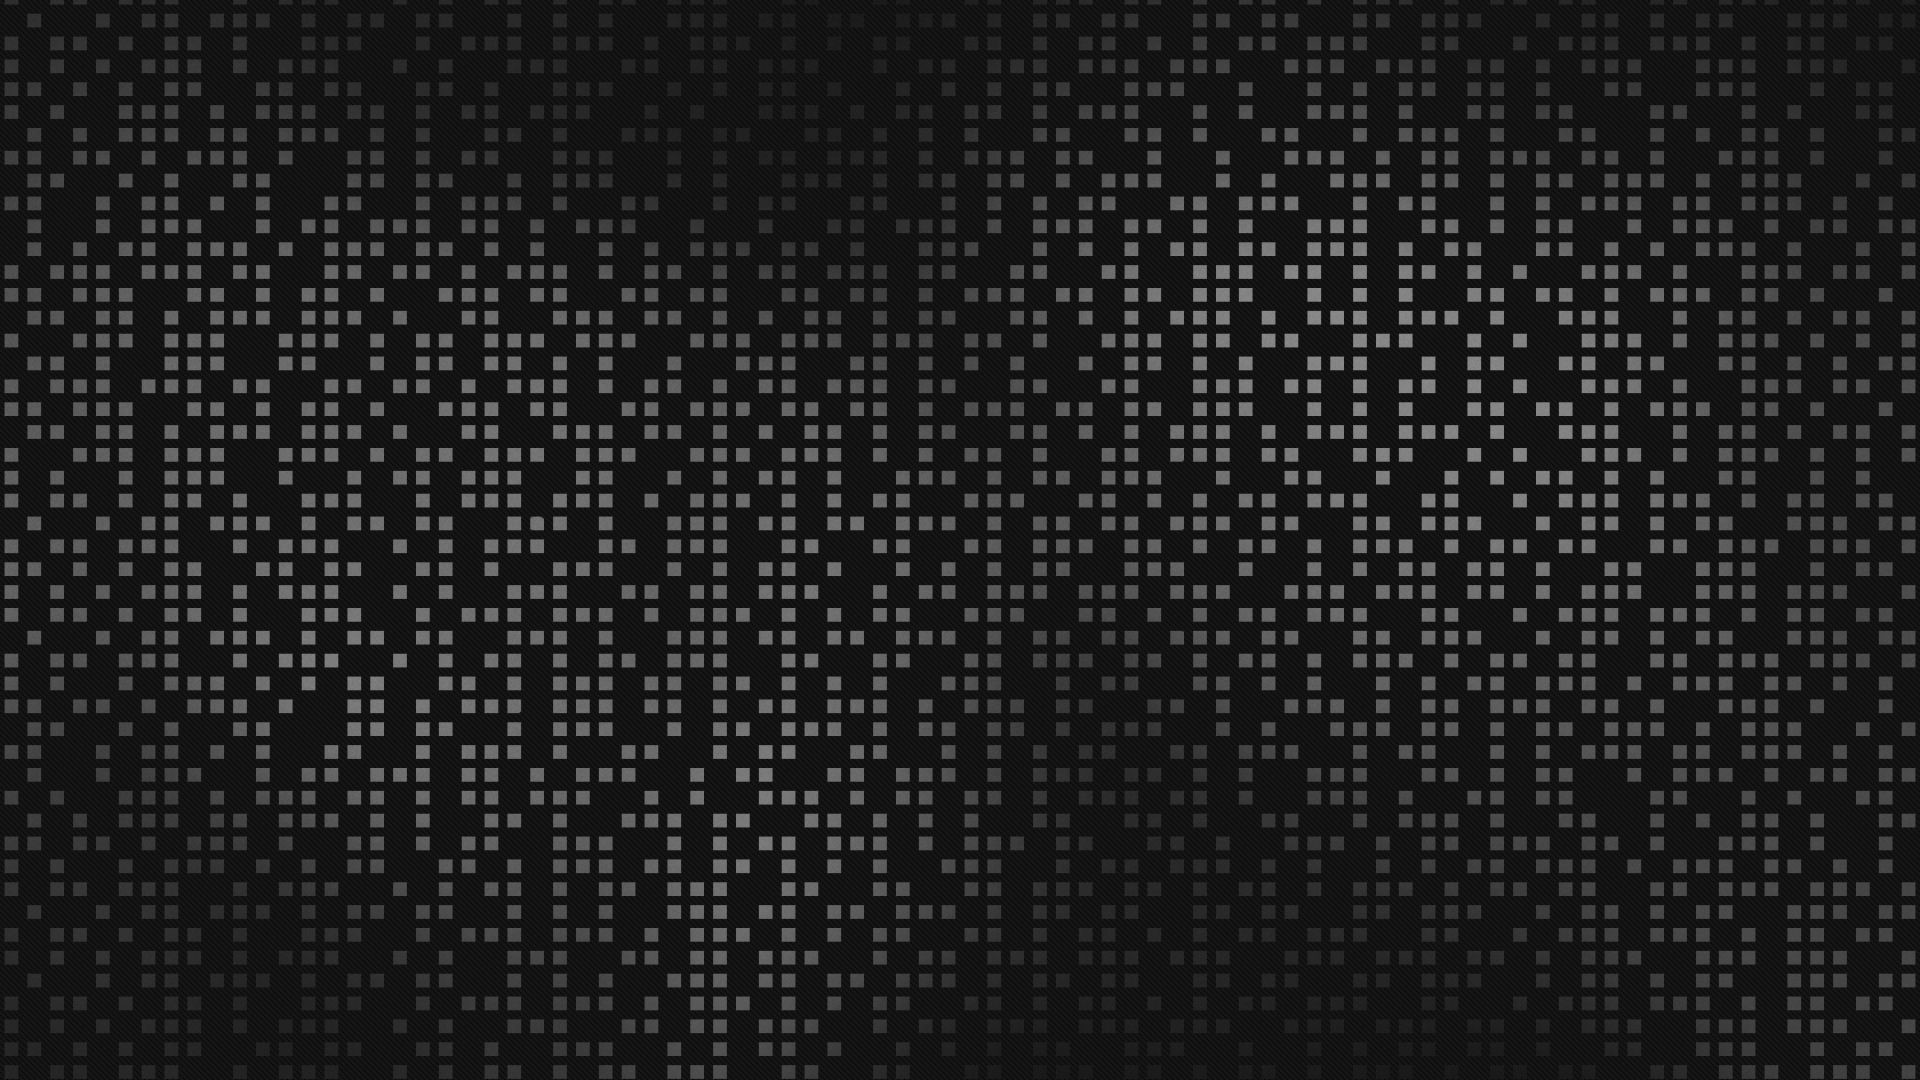 Alien, Wallpaper, And Grunge Image - Skrillex Recess Wallpaper Hd - HD Wallpaper 